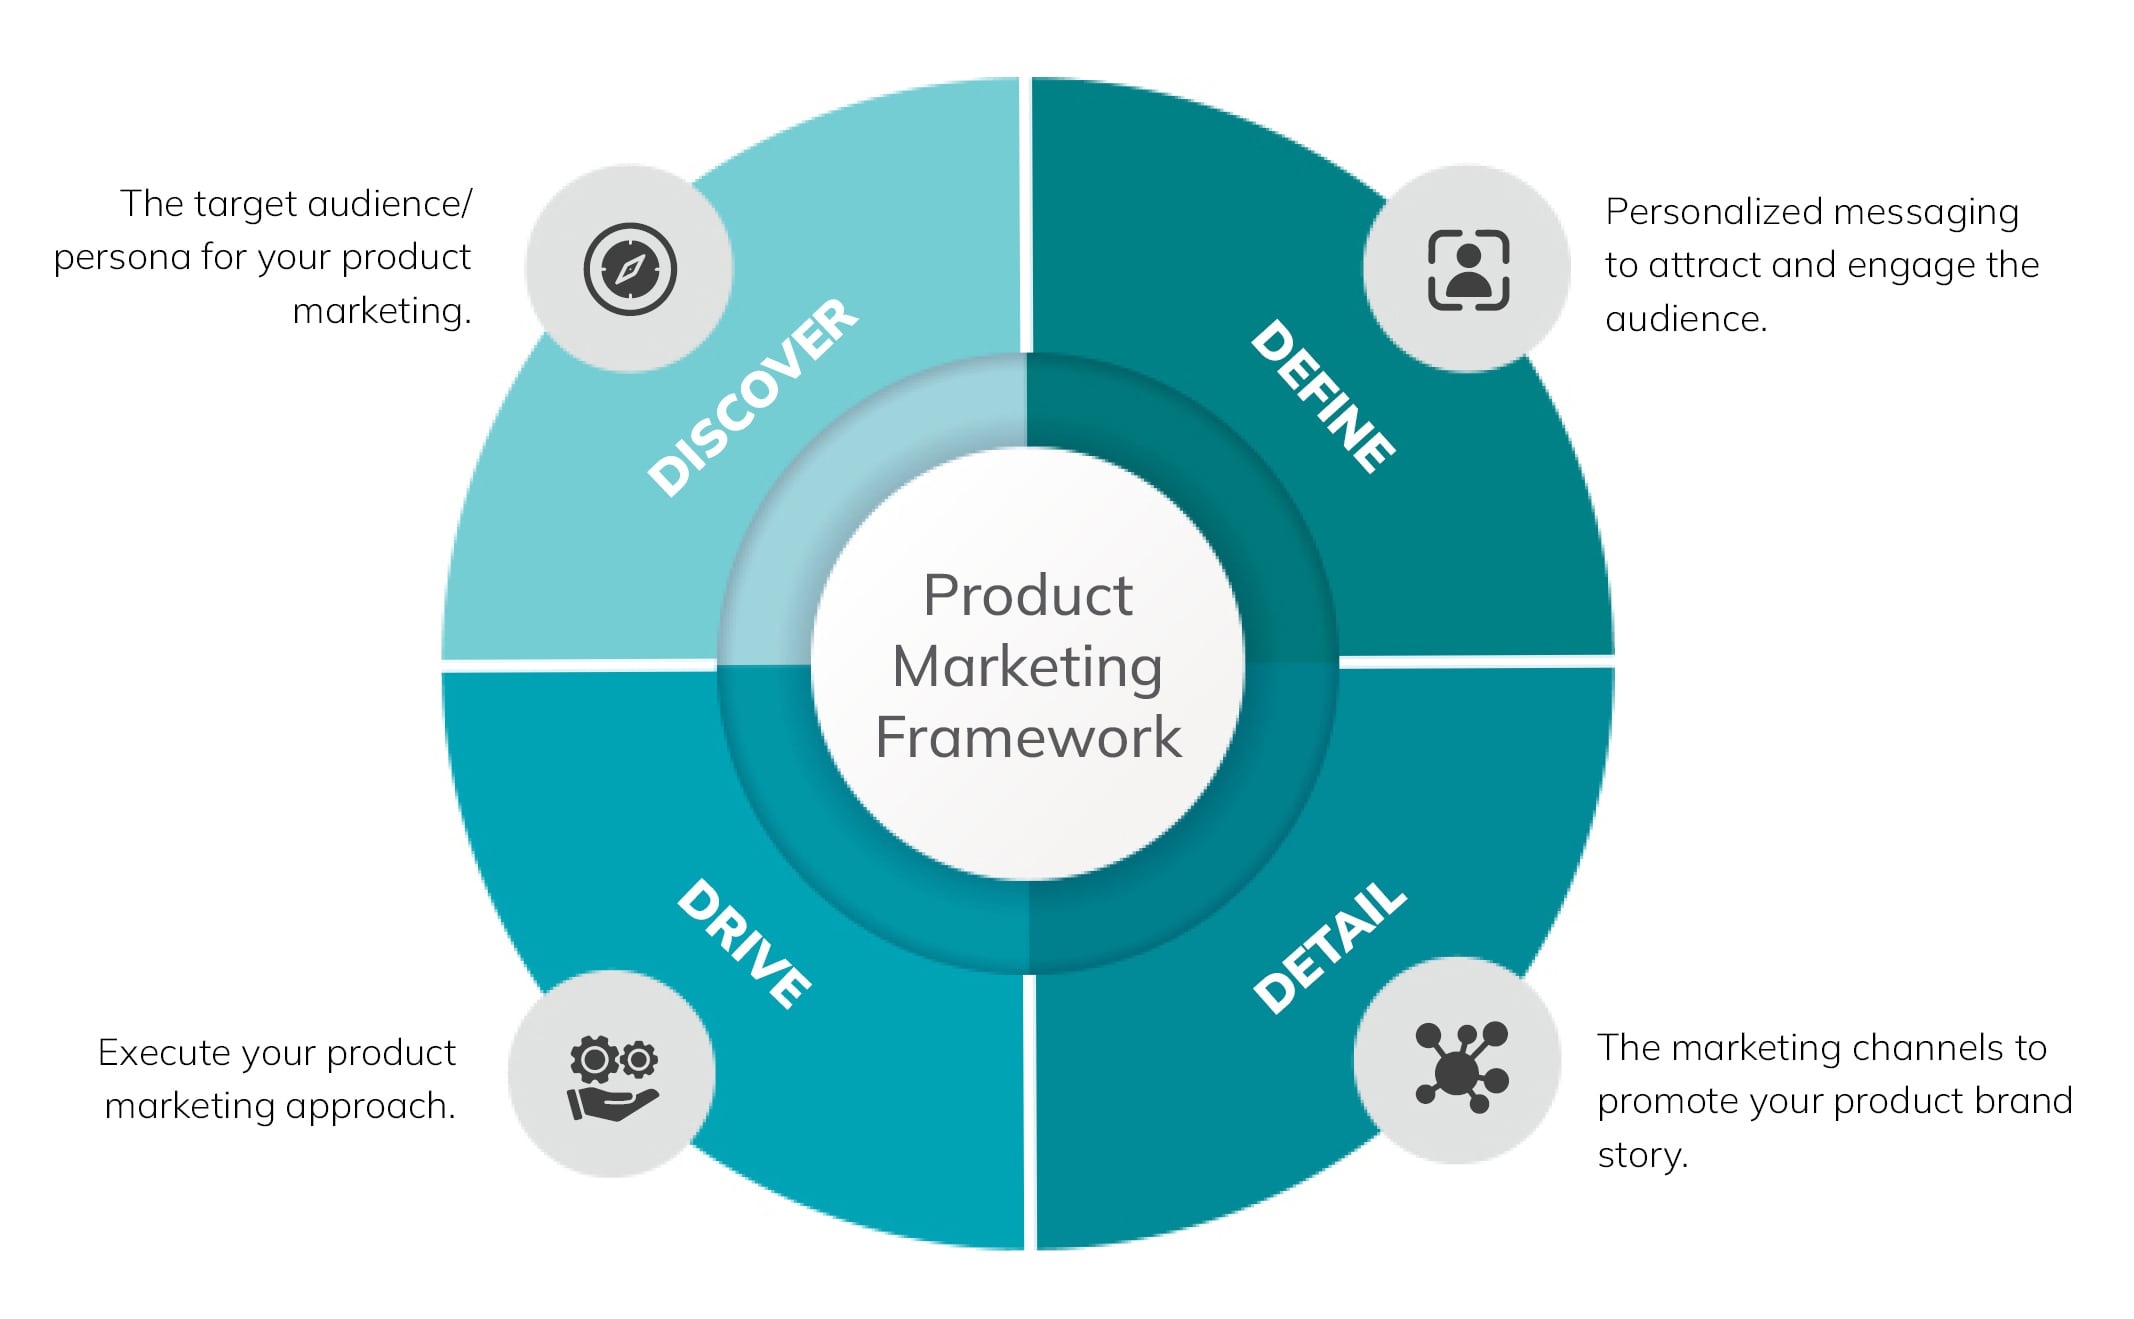 Product Marketing Framework